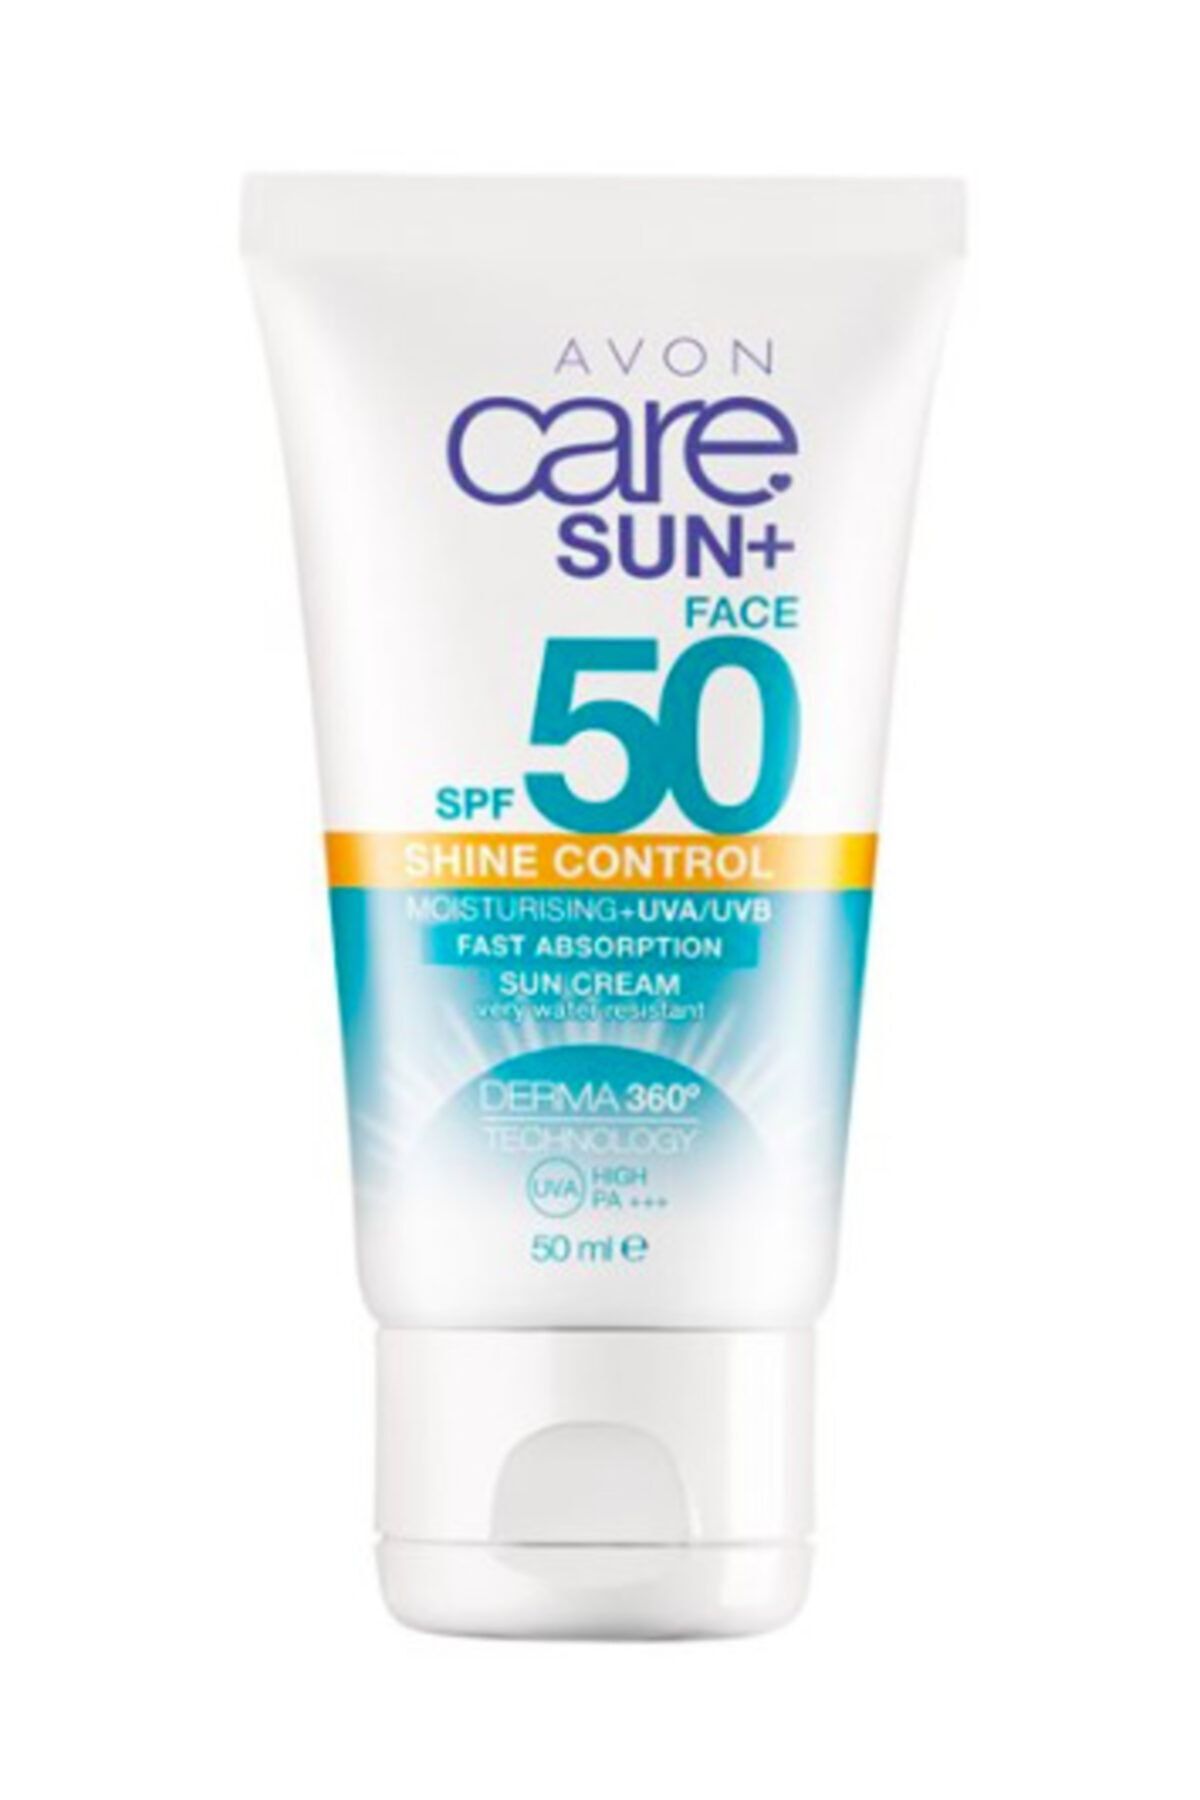 Avon Care Sun+ Shine Güneş Koruyucu Yüz Kremi